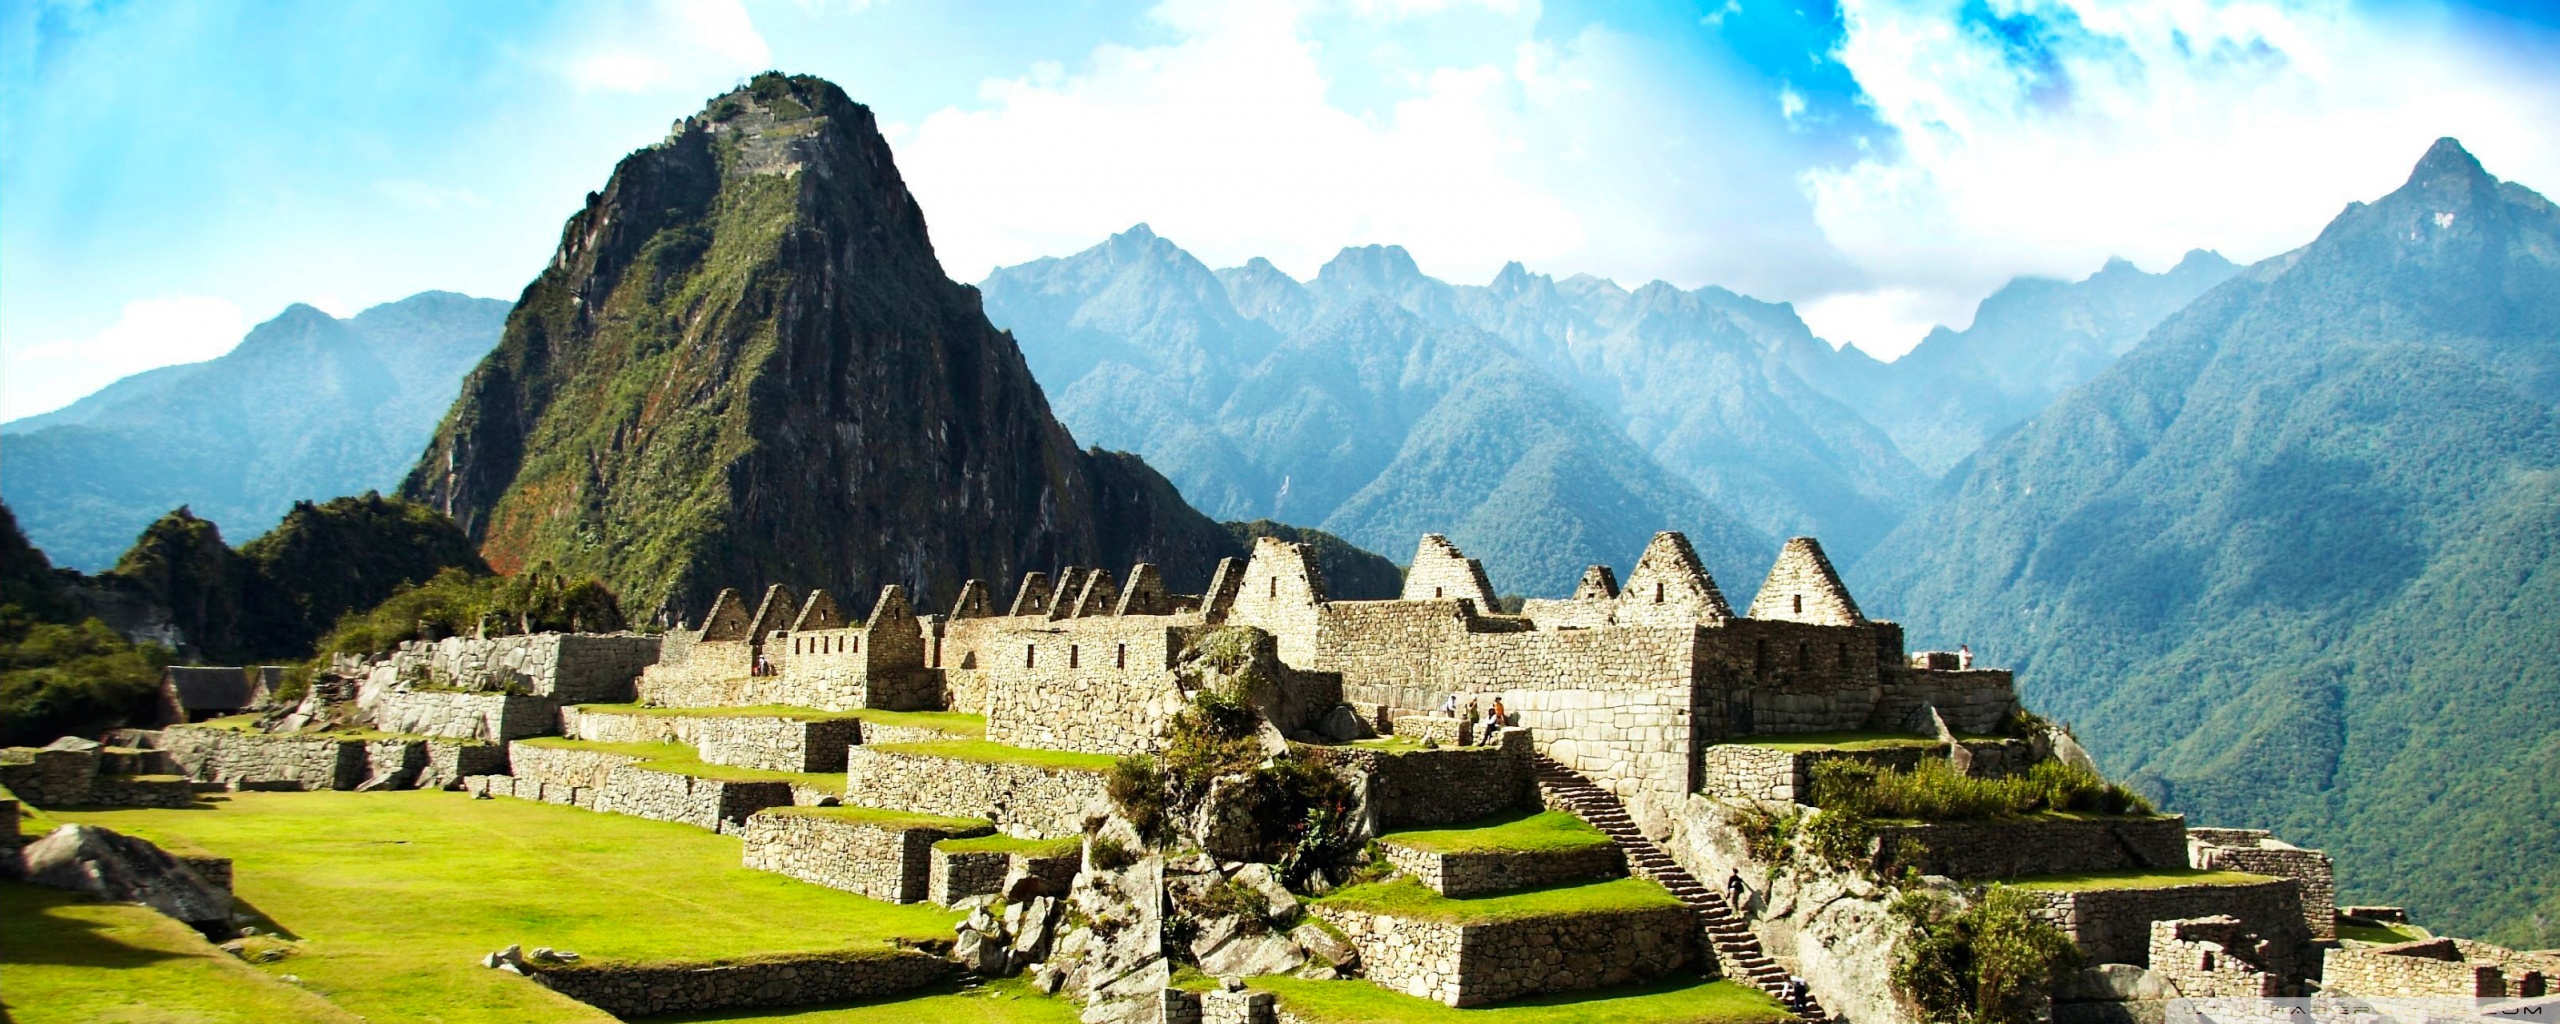 Ultra HD Machu Picchu Wallpaper 2fa417t 4usky